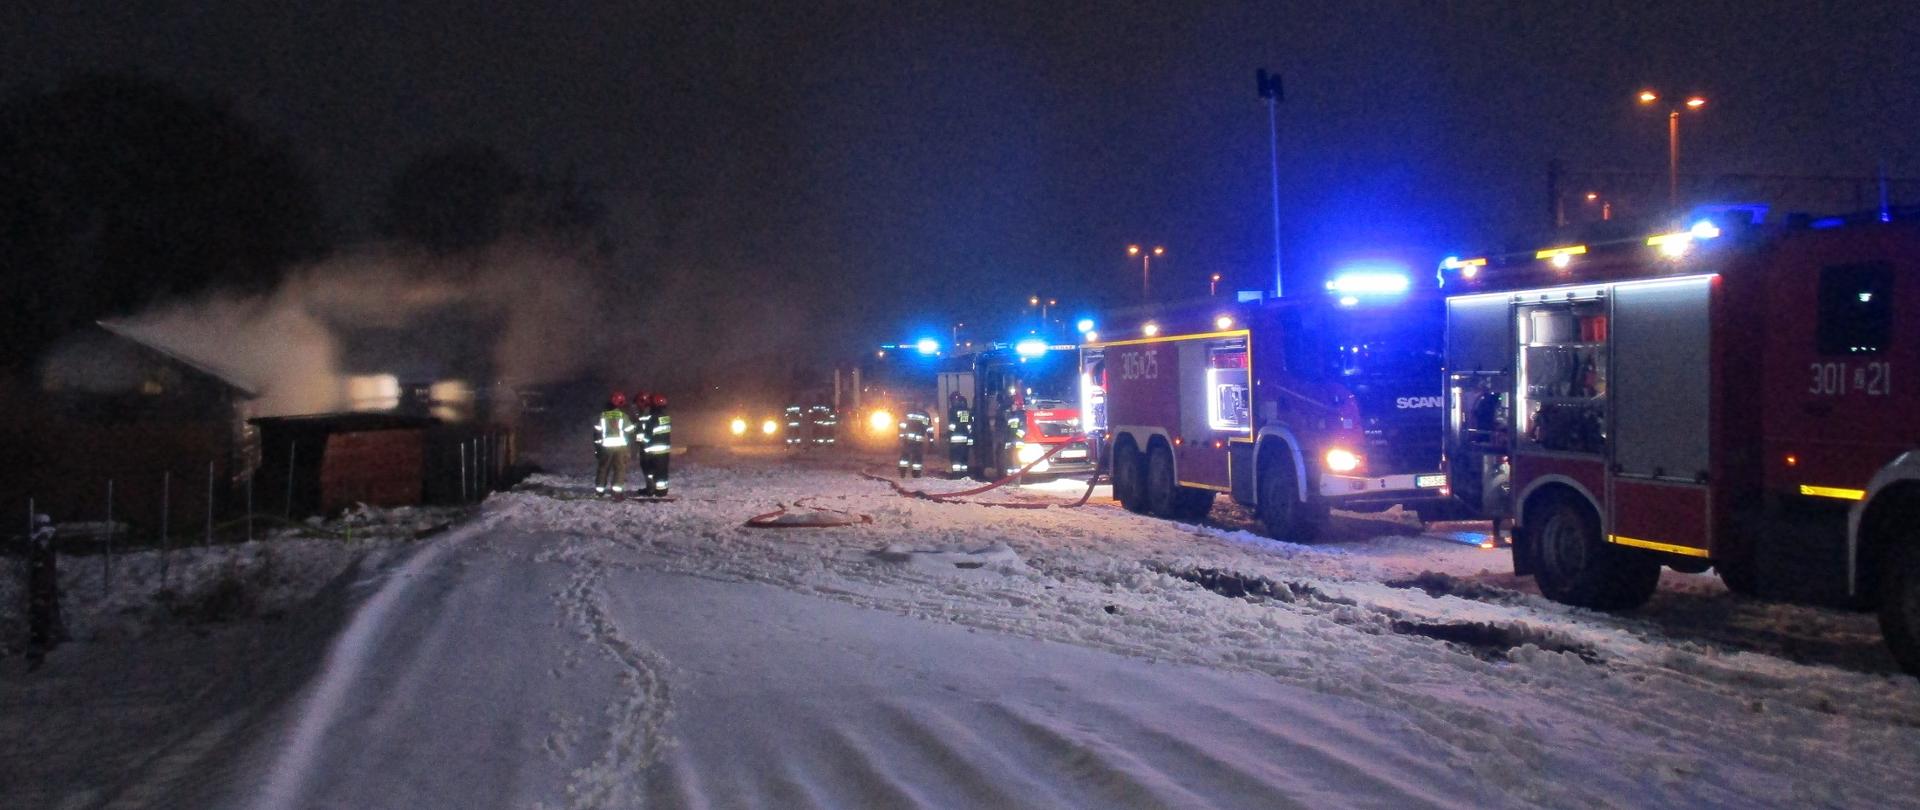 Droga pokryta śniegiem, trzech strażaków na środku zdjęcia, z prawej strony 4 wozy bojowe straży pożarnej z lewej zadymienie unoszące się z palącej się altany, nie widać płomieni.